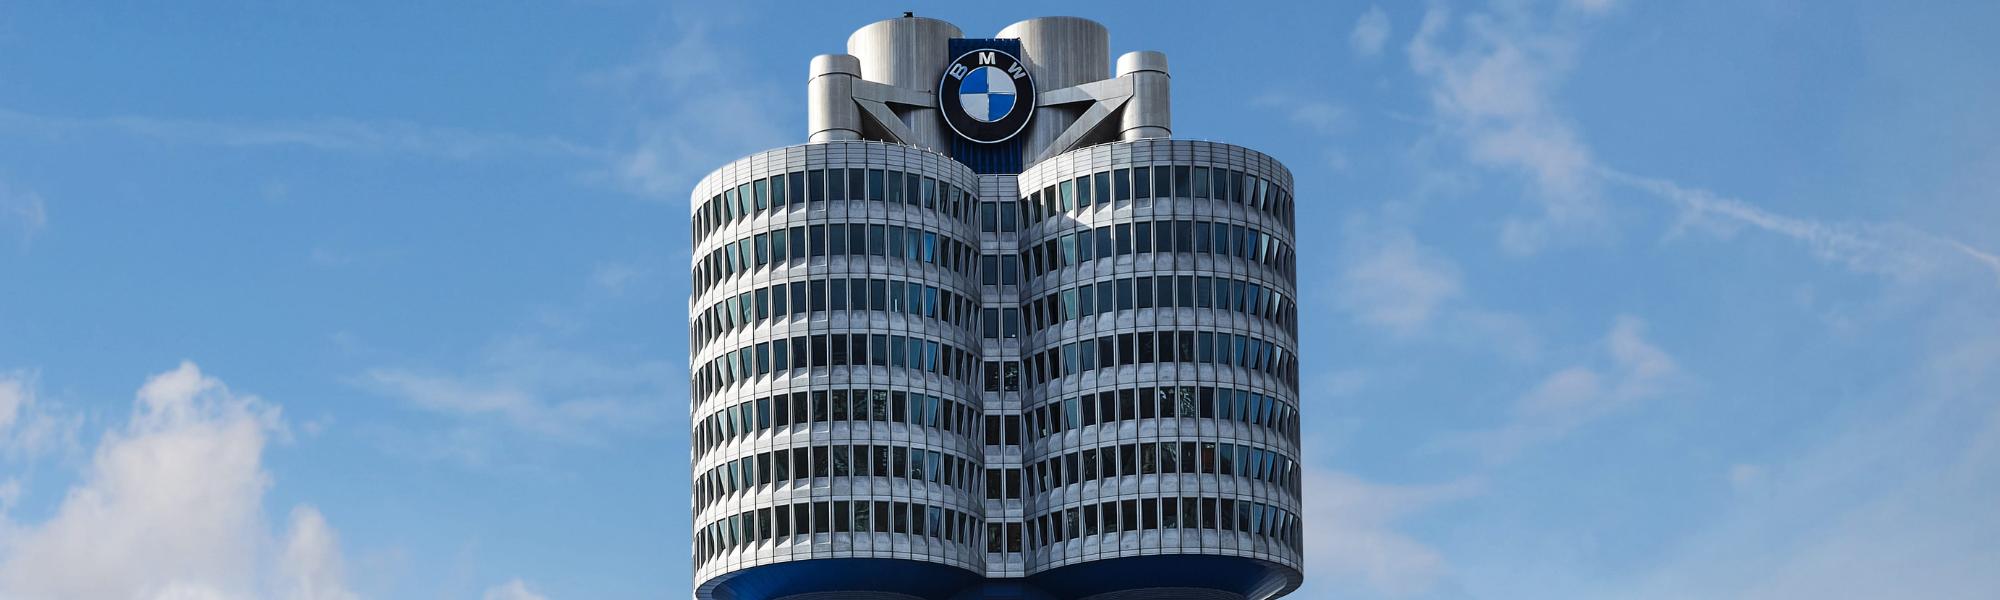 BMW-Vierzylinder München